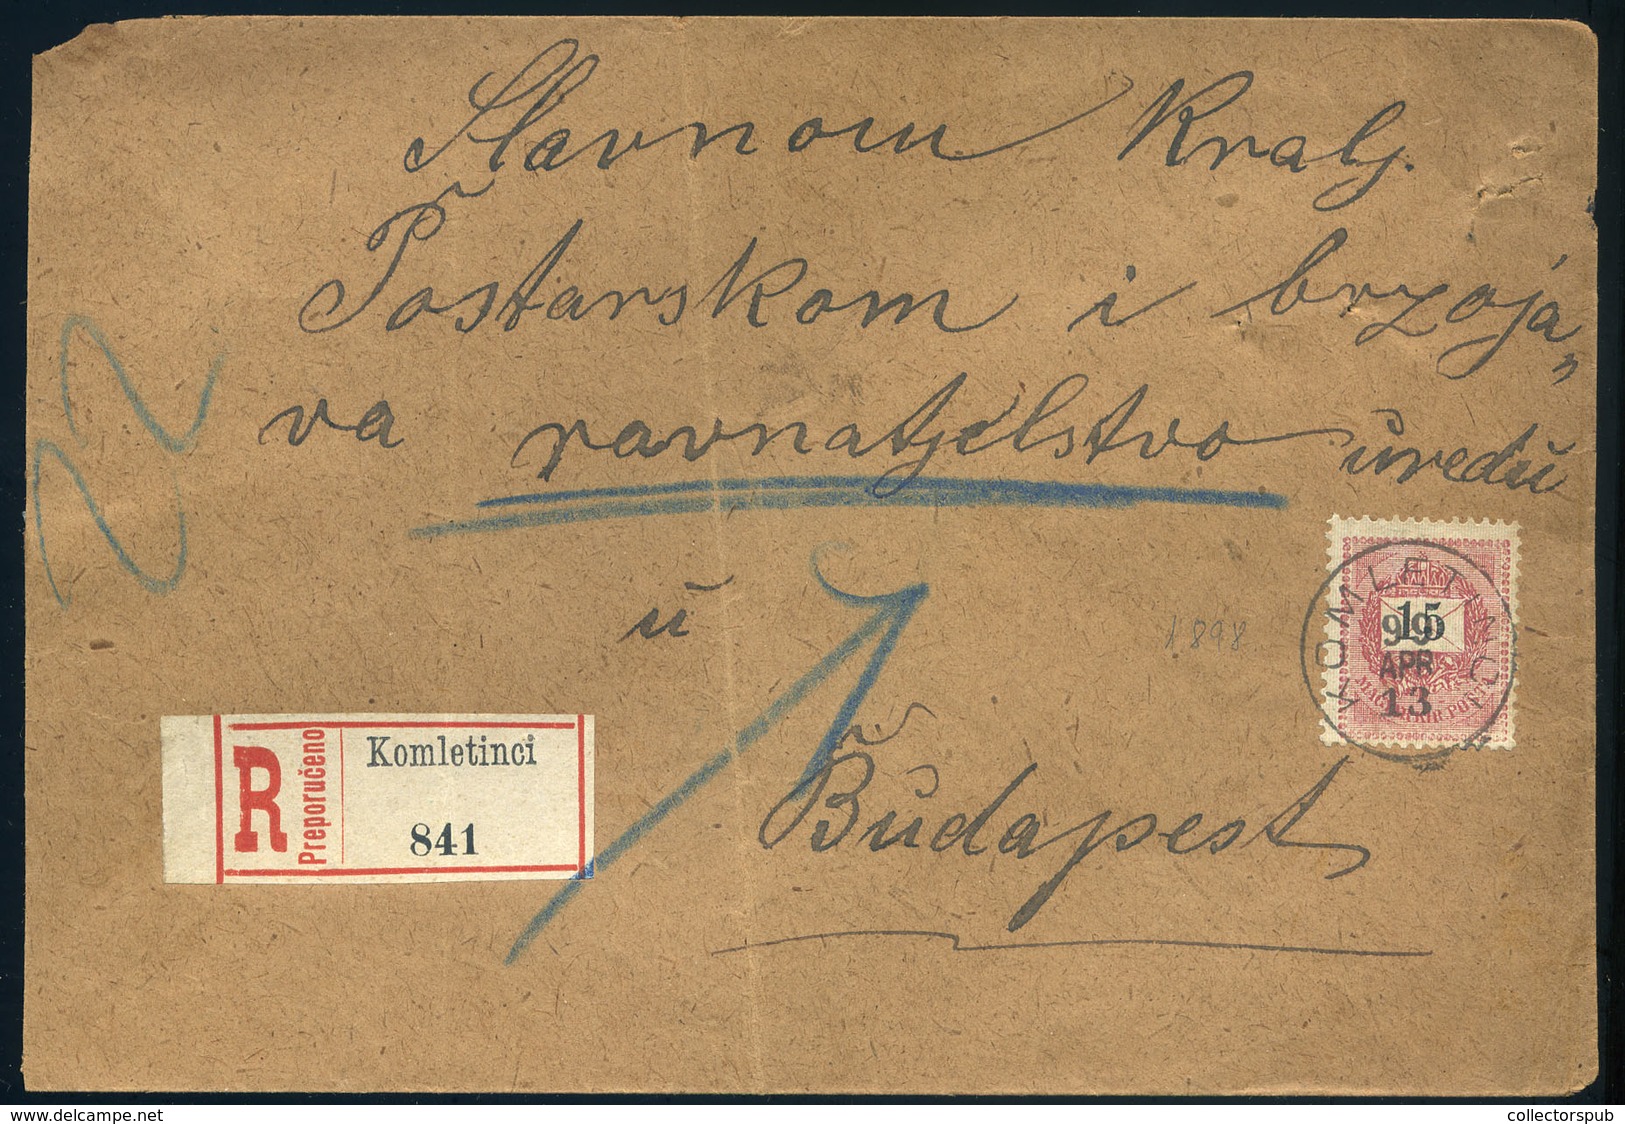 KOMLETINCI 1899. Ajánlott Levél Budapestre Küldve - Gebraucht